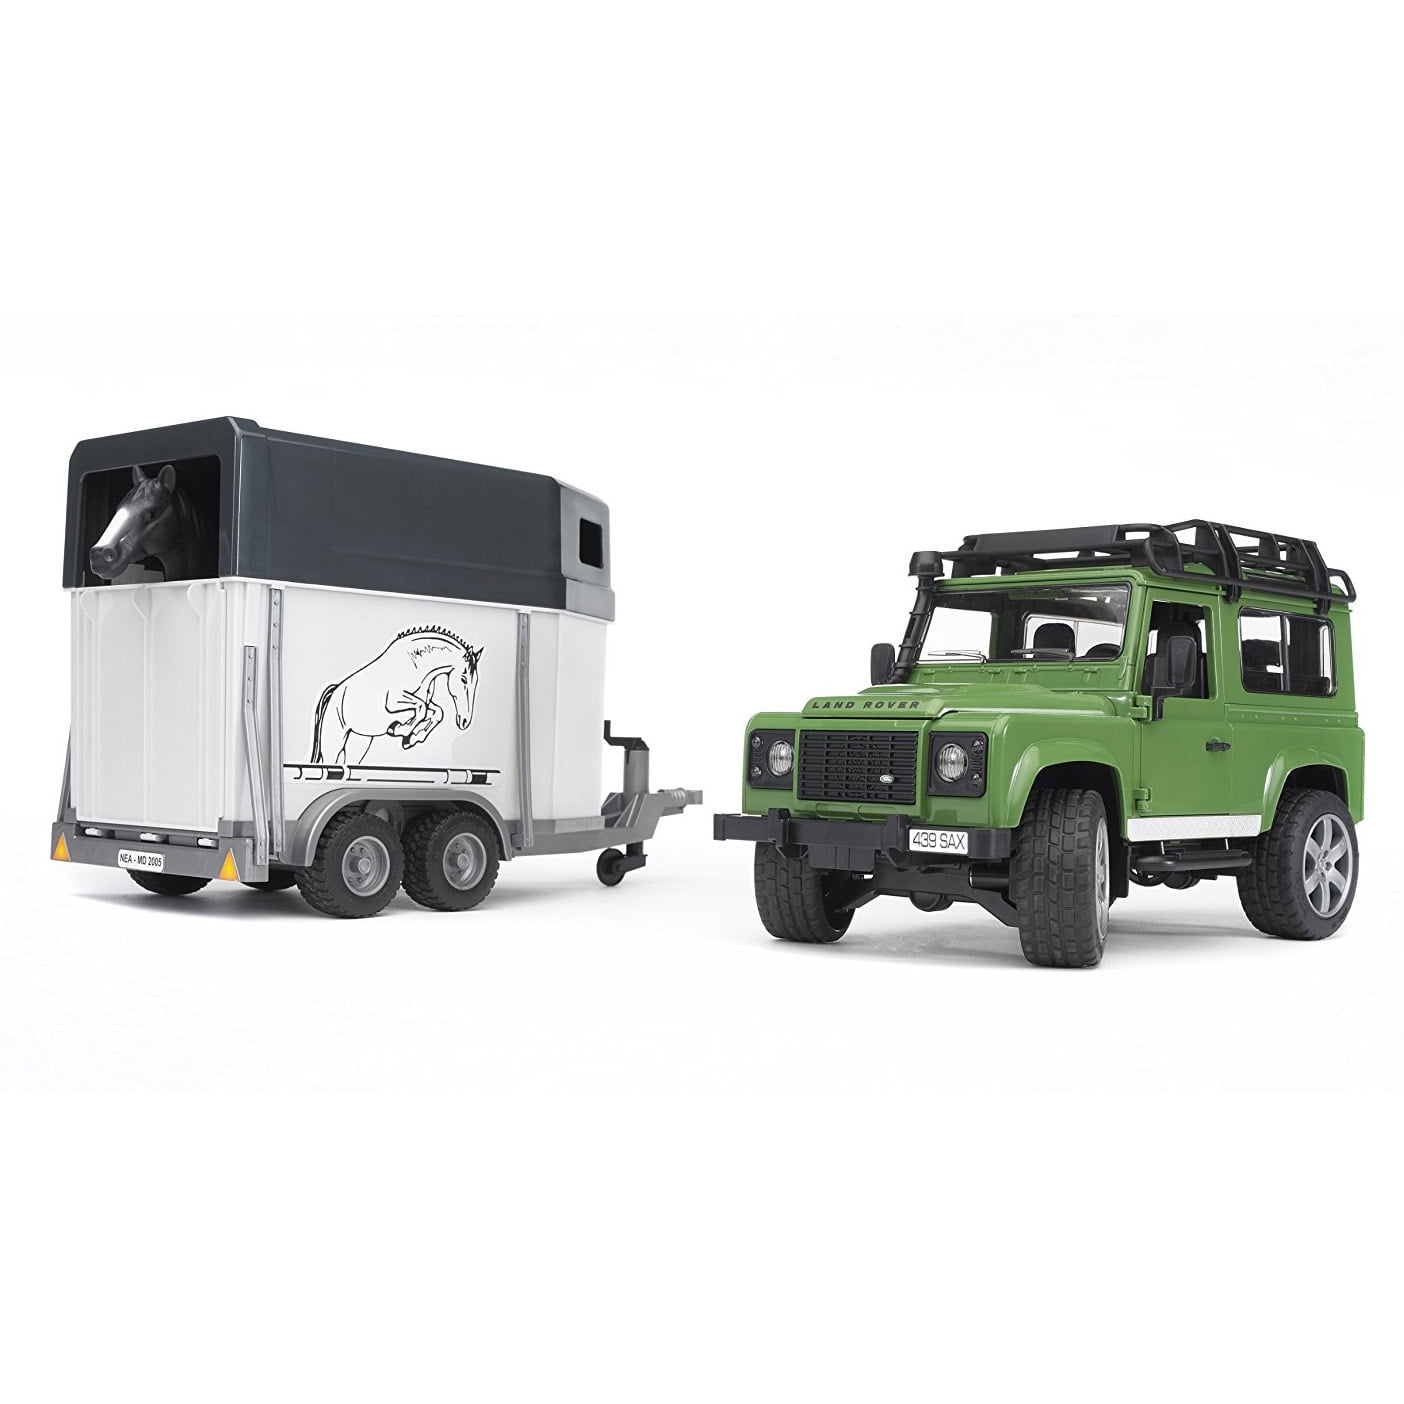 Bruder Toys Land Rover Defender Station Wagon Horse Trailer 1 Horse 02592